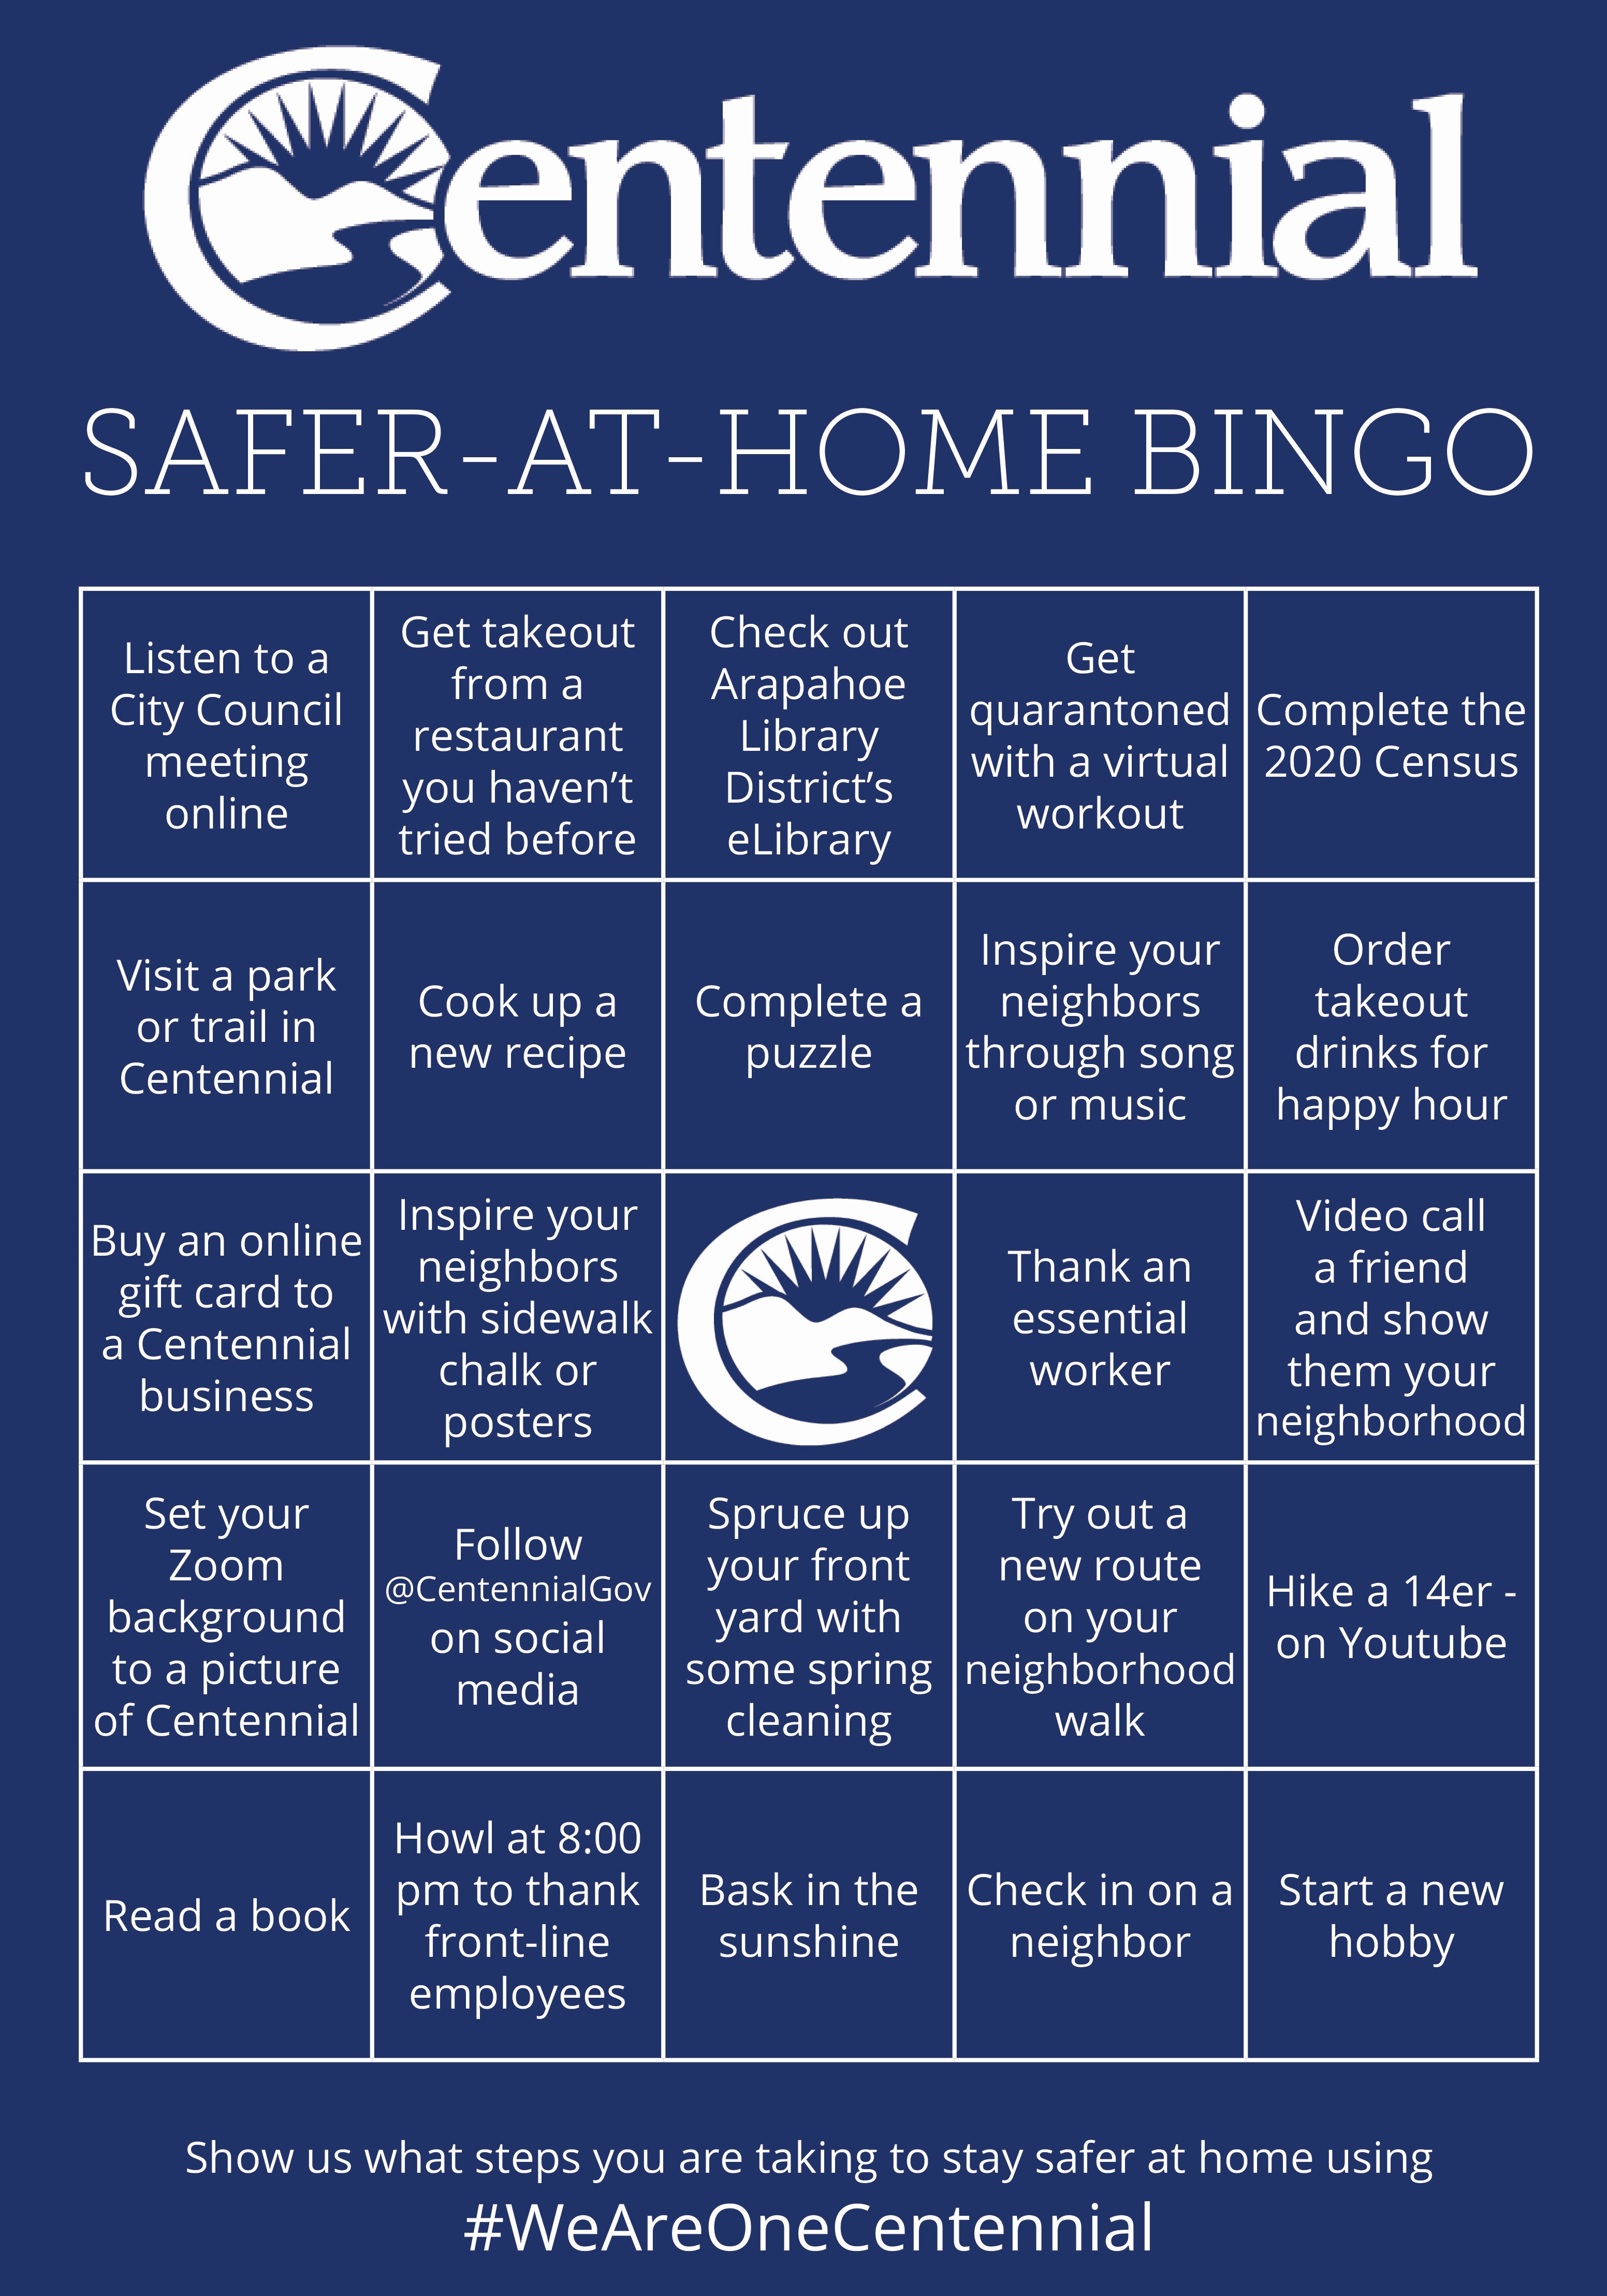 Centennial safer-at-home bingo card image